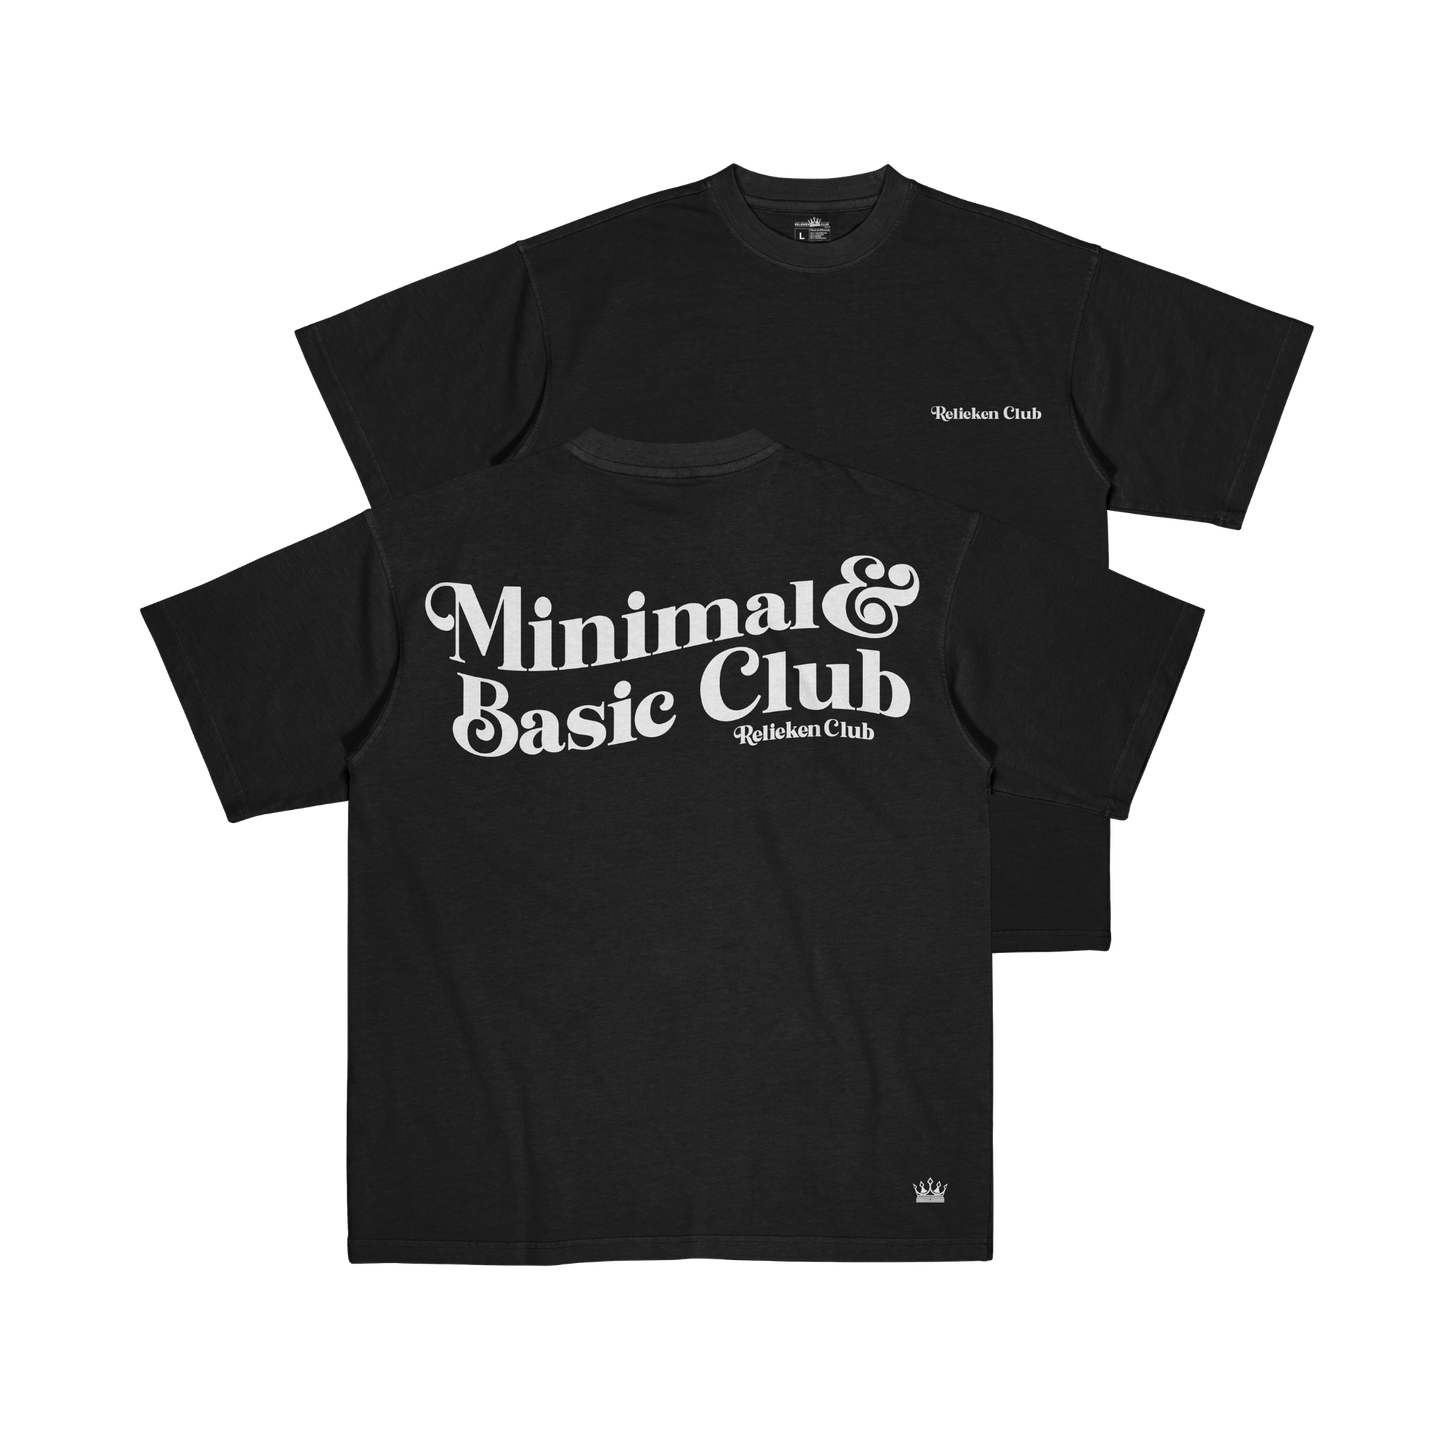 Relieken T-Shirt Minimal & Basic Negro - Relieken Club